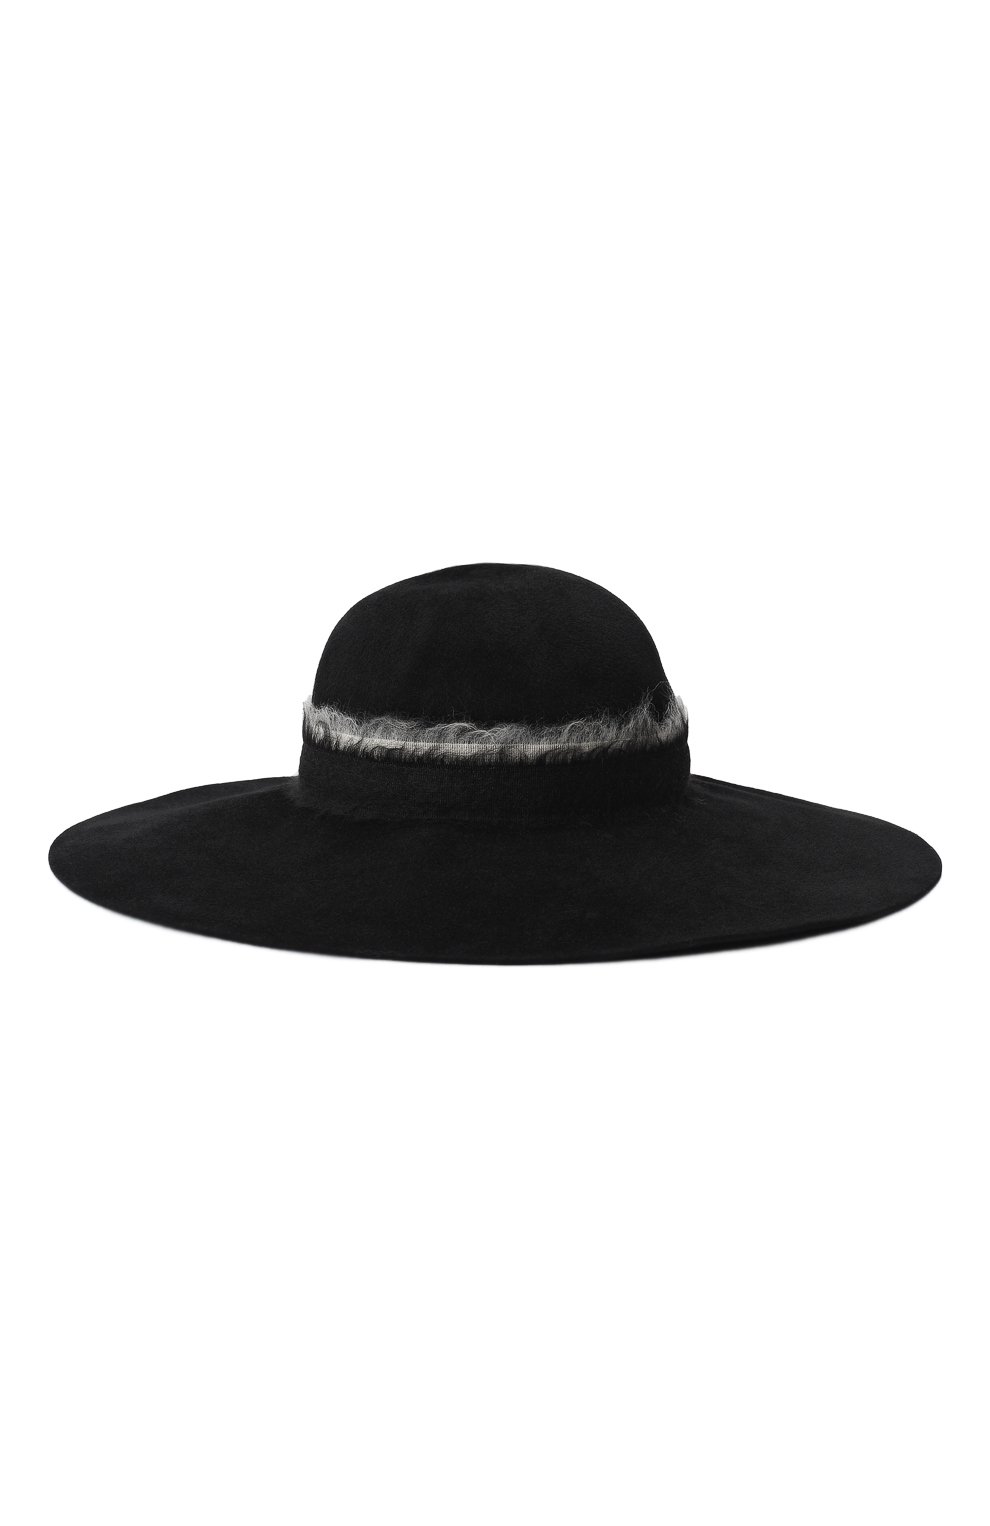 Фетровая шляпа | Eugenia Kim | Чёрный - 2